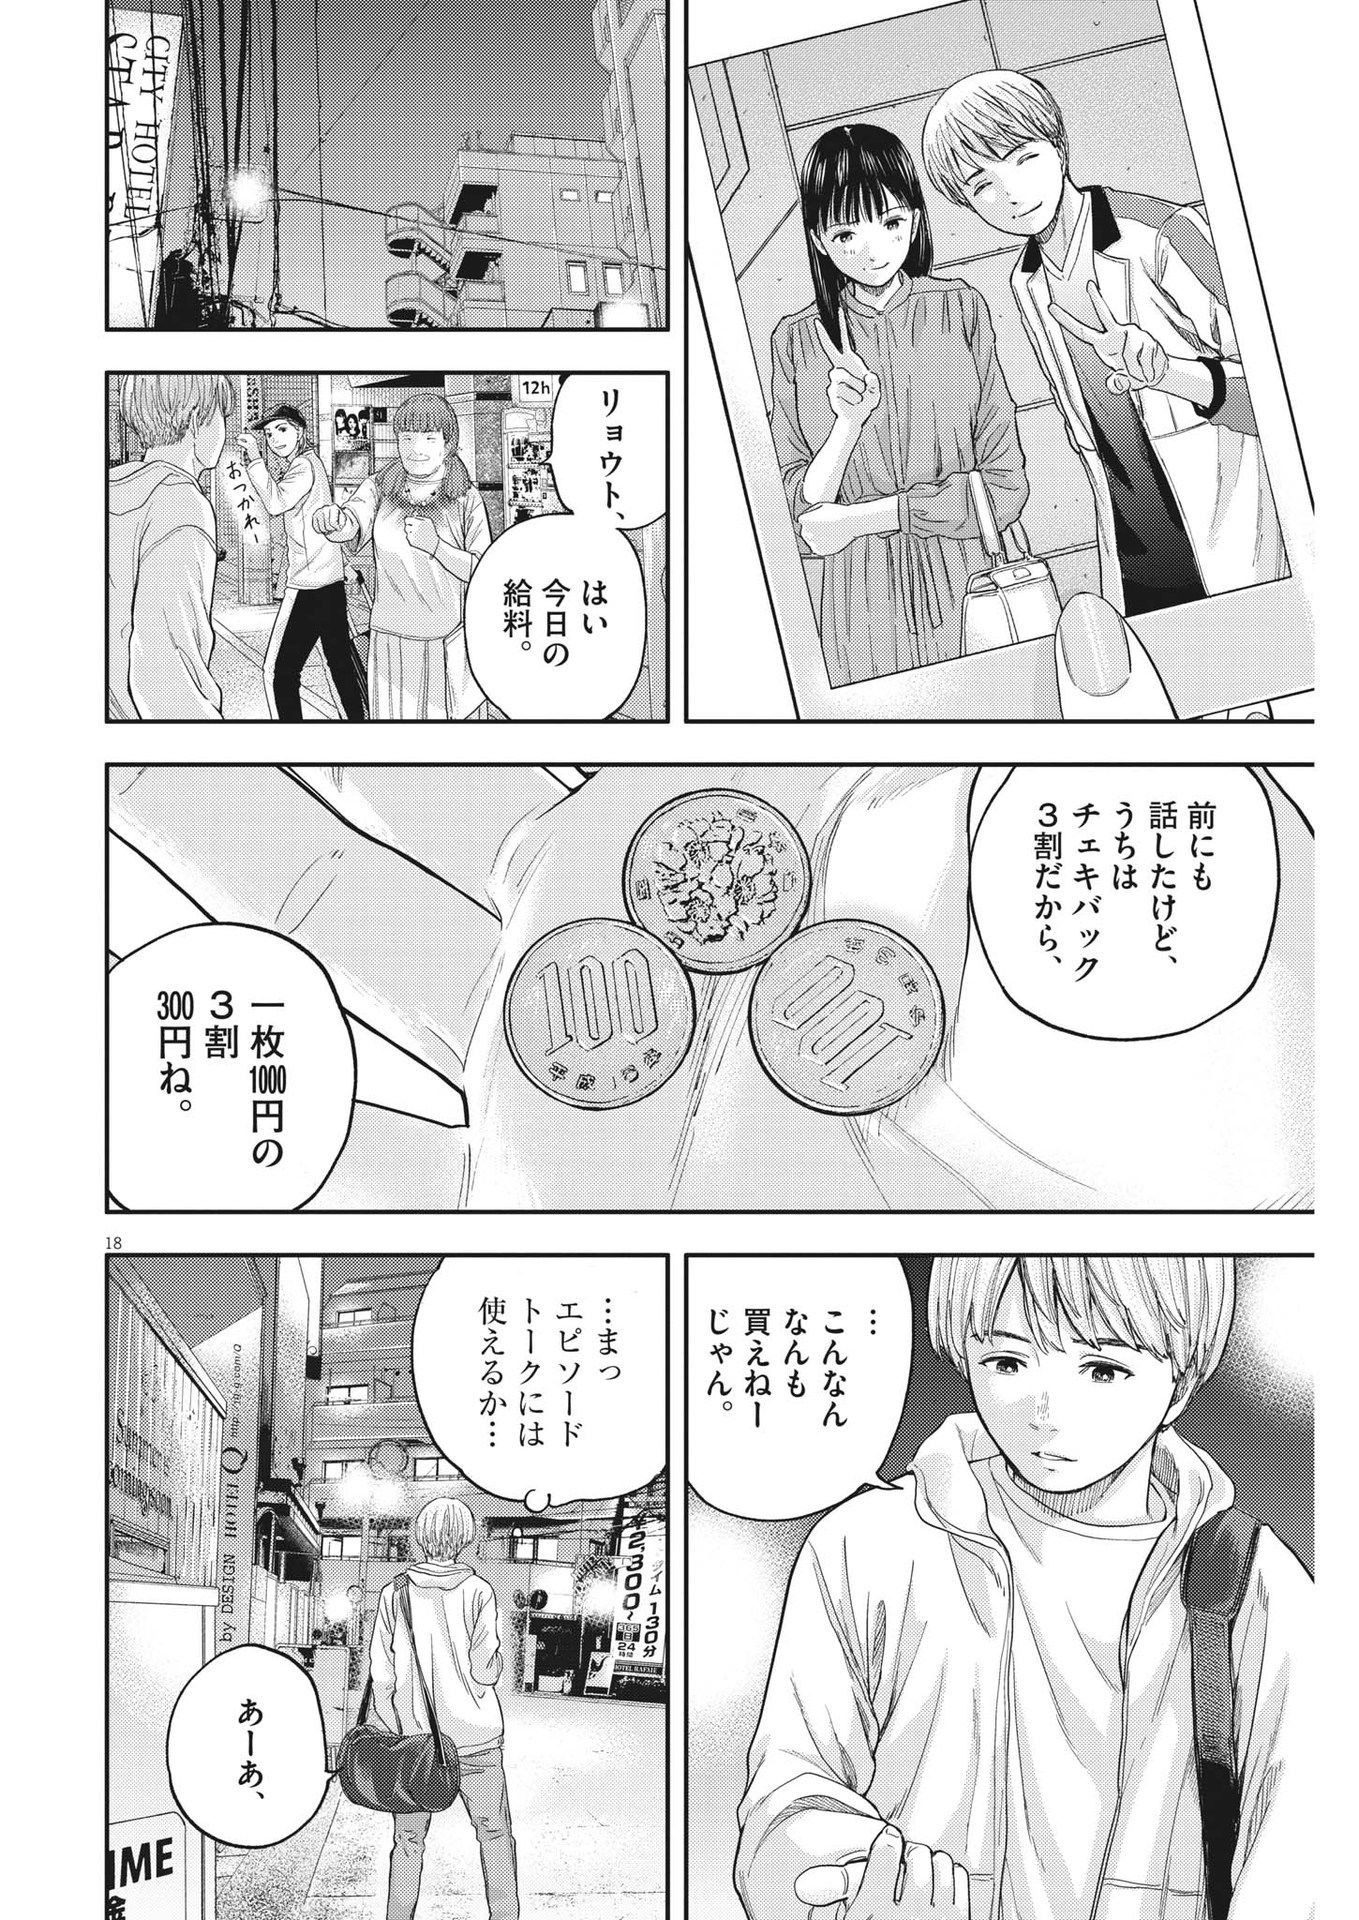 Yumenashi-sensei no Shinroshidou - Chapter 8 - Page 18